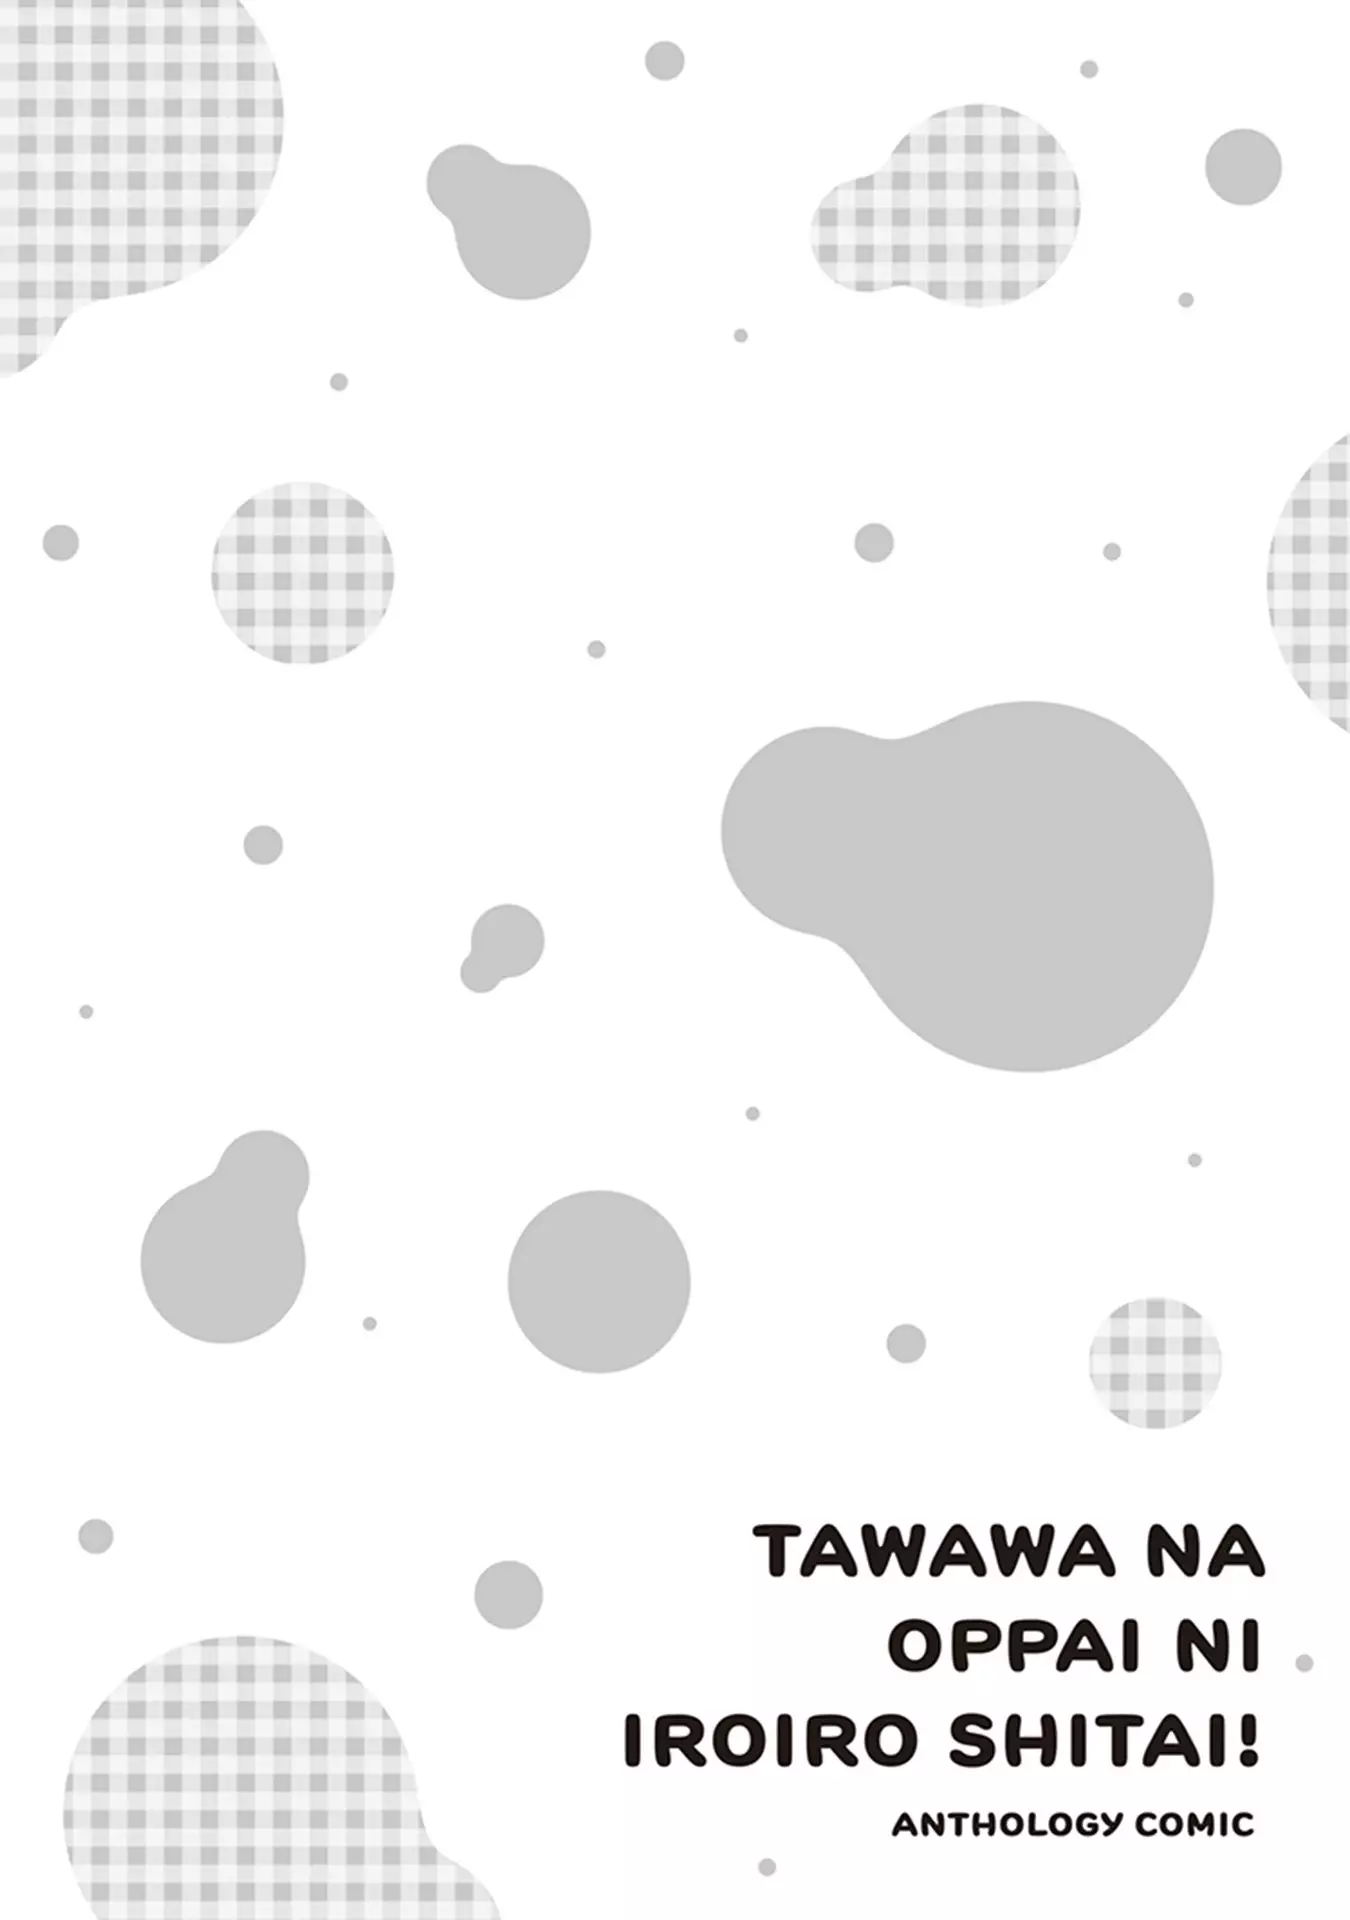 Tawawa Na Oppai Ni Iroiro Shitai! Anthology Comic - 4 page 10-13596dde